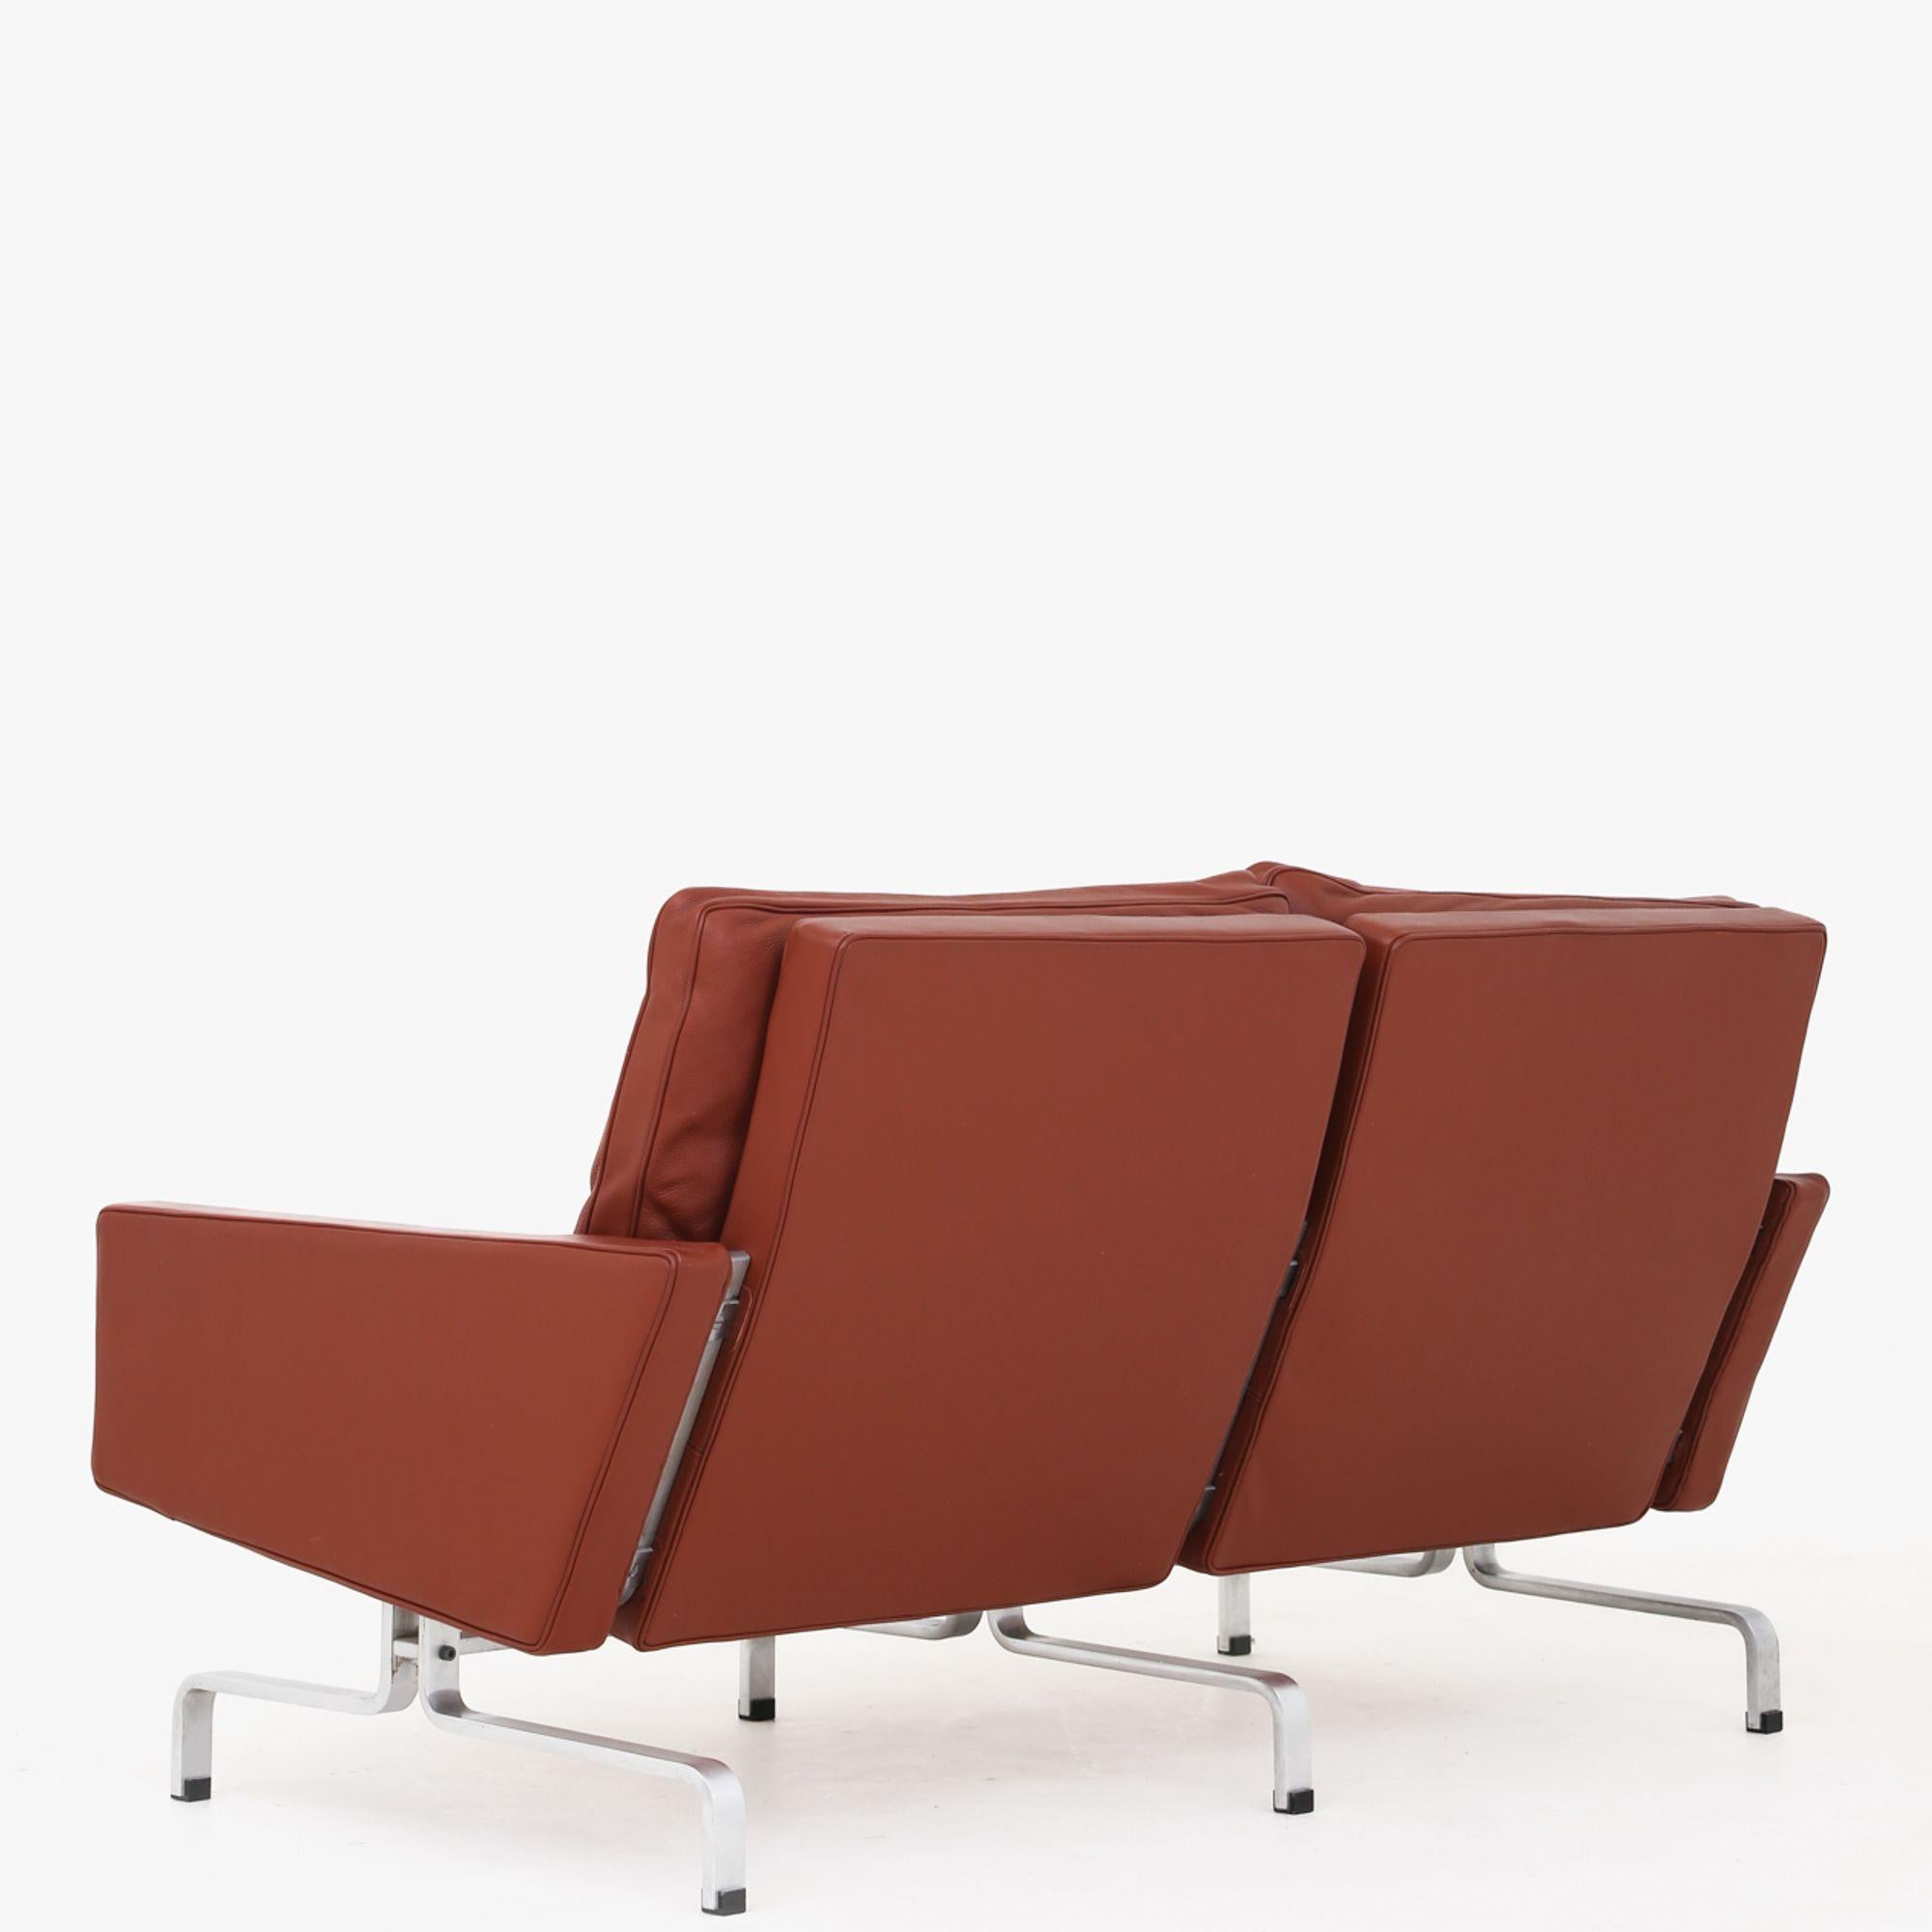 PK 31/2 - 2 seater sofa in red semi-aniline leather on steel frame. Poul Kjærholm / E. Kold Christensen.